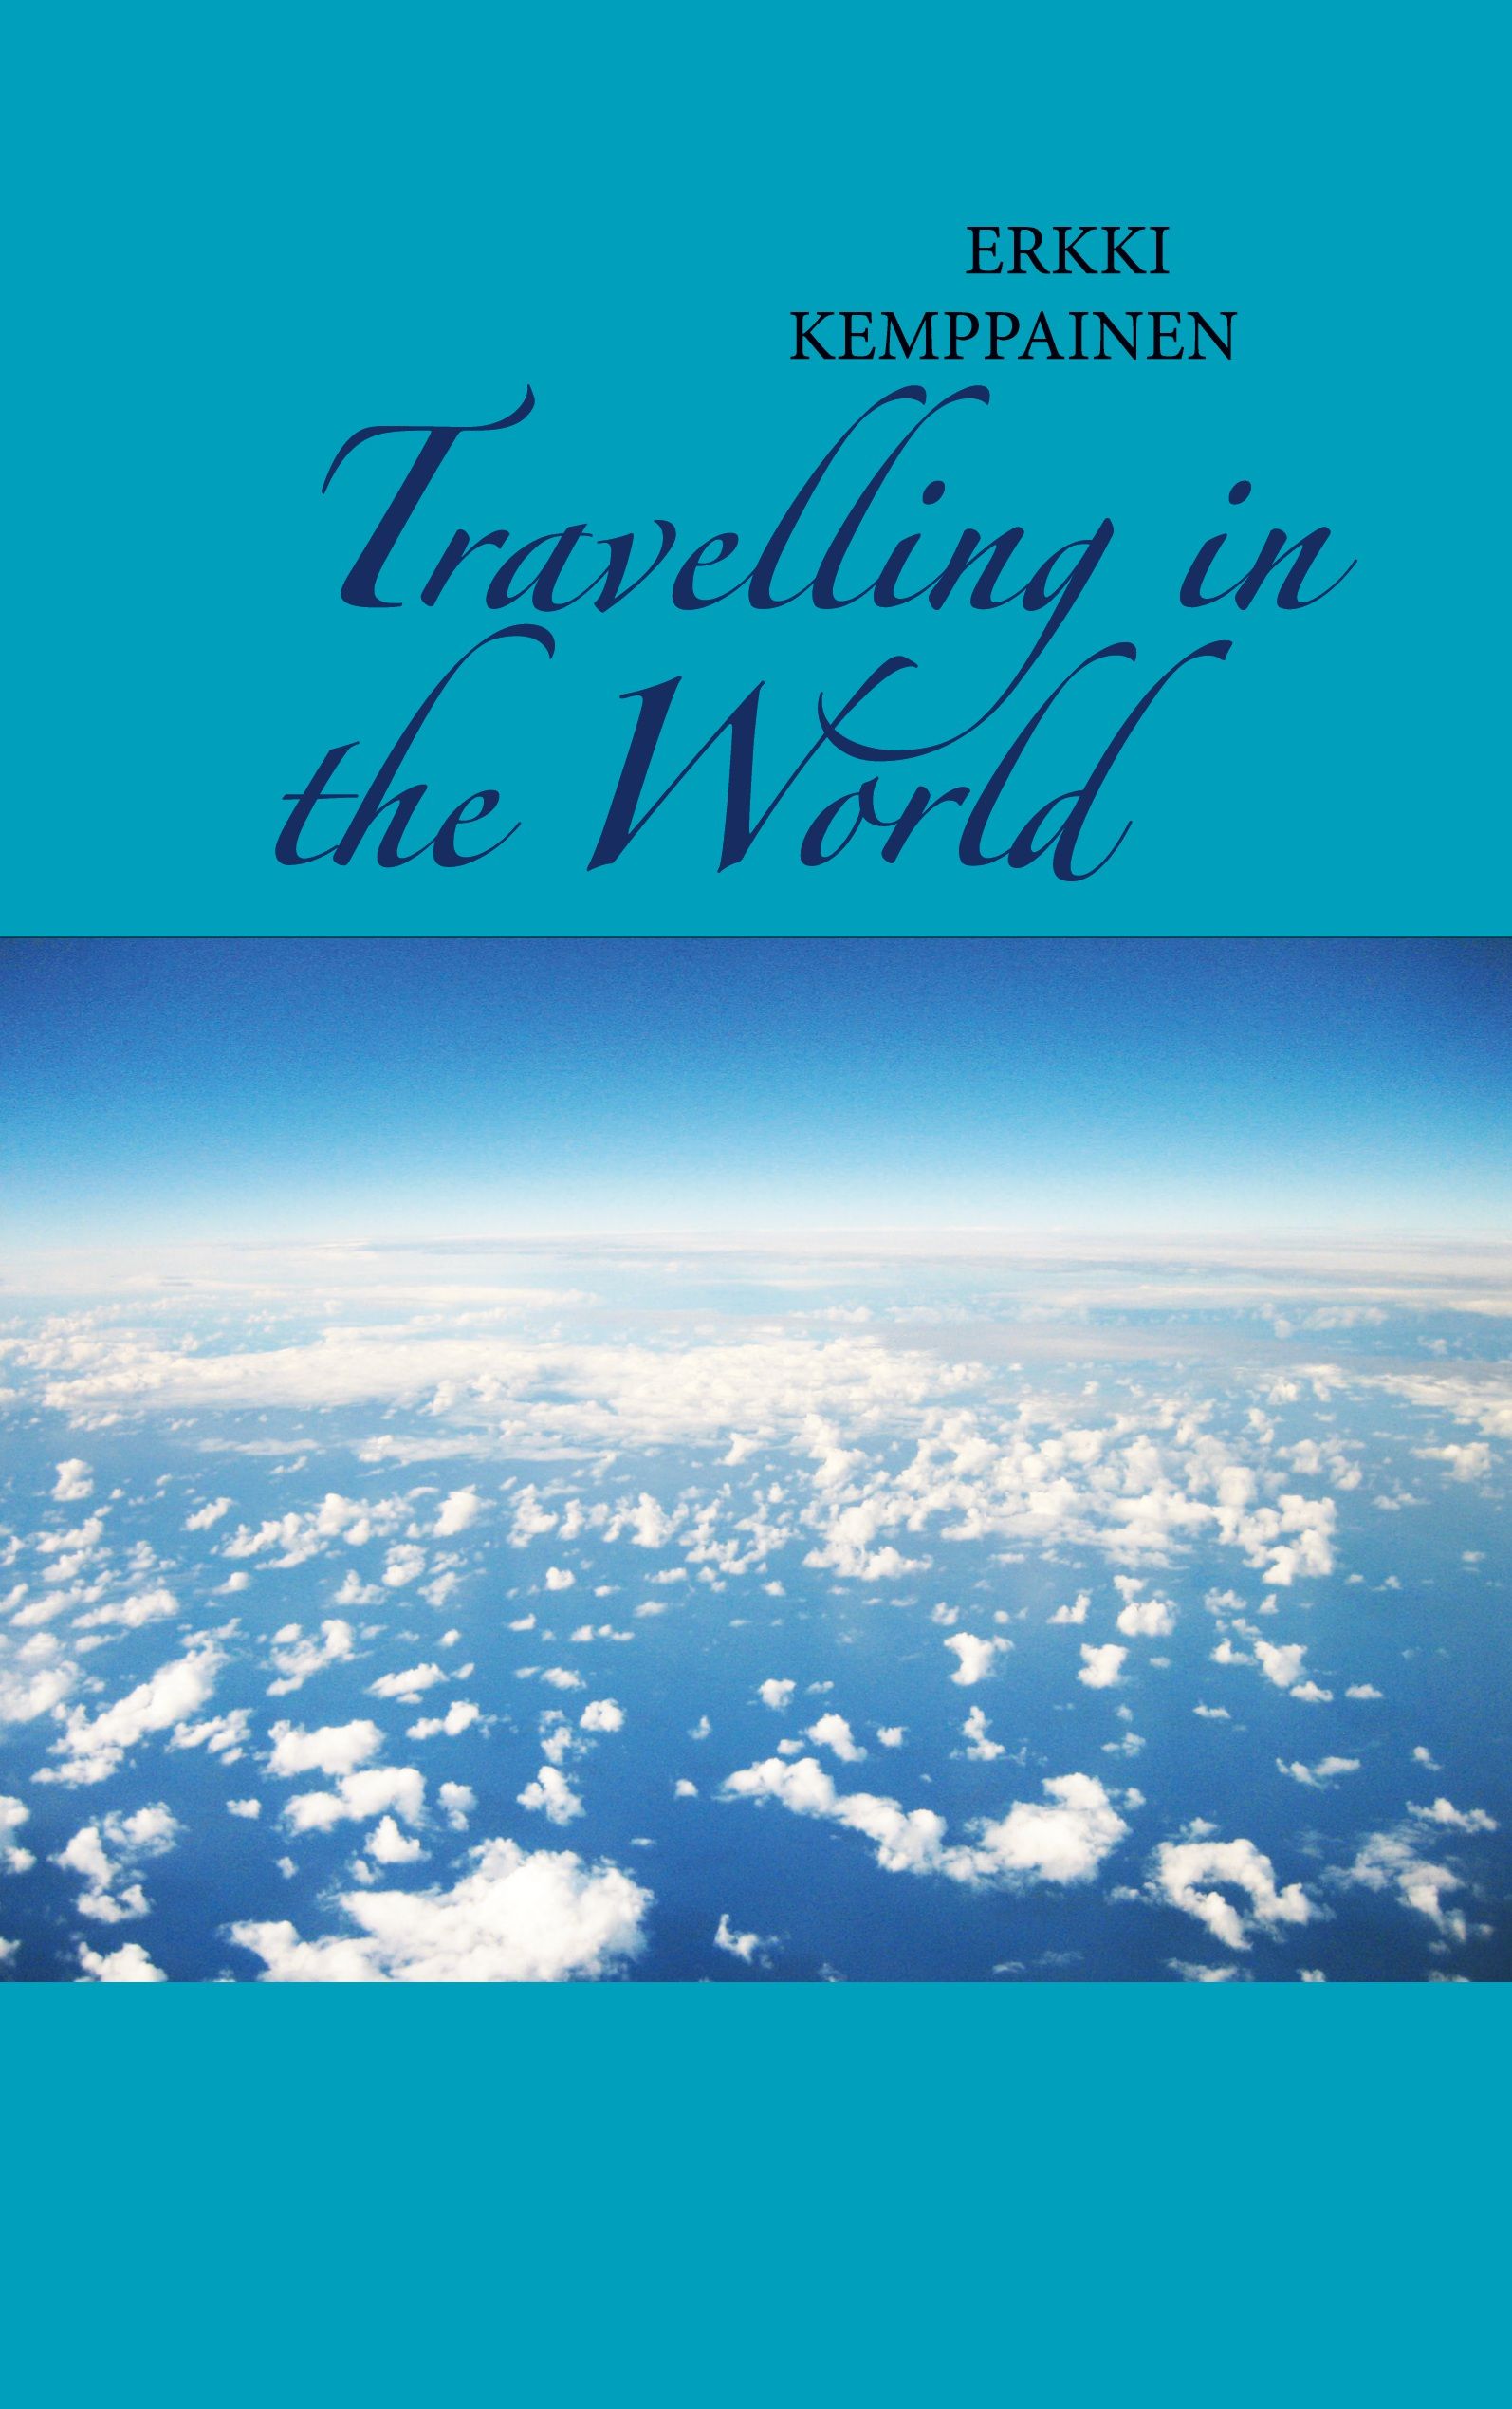 Erkki Kemppainen : Travelling in the World